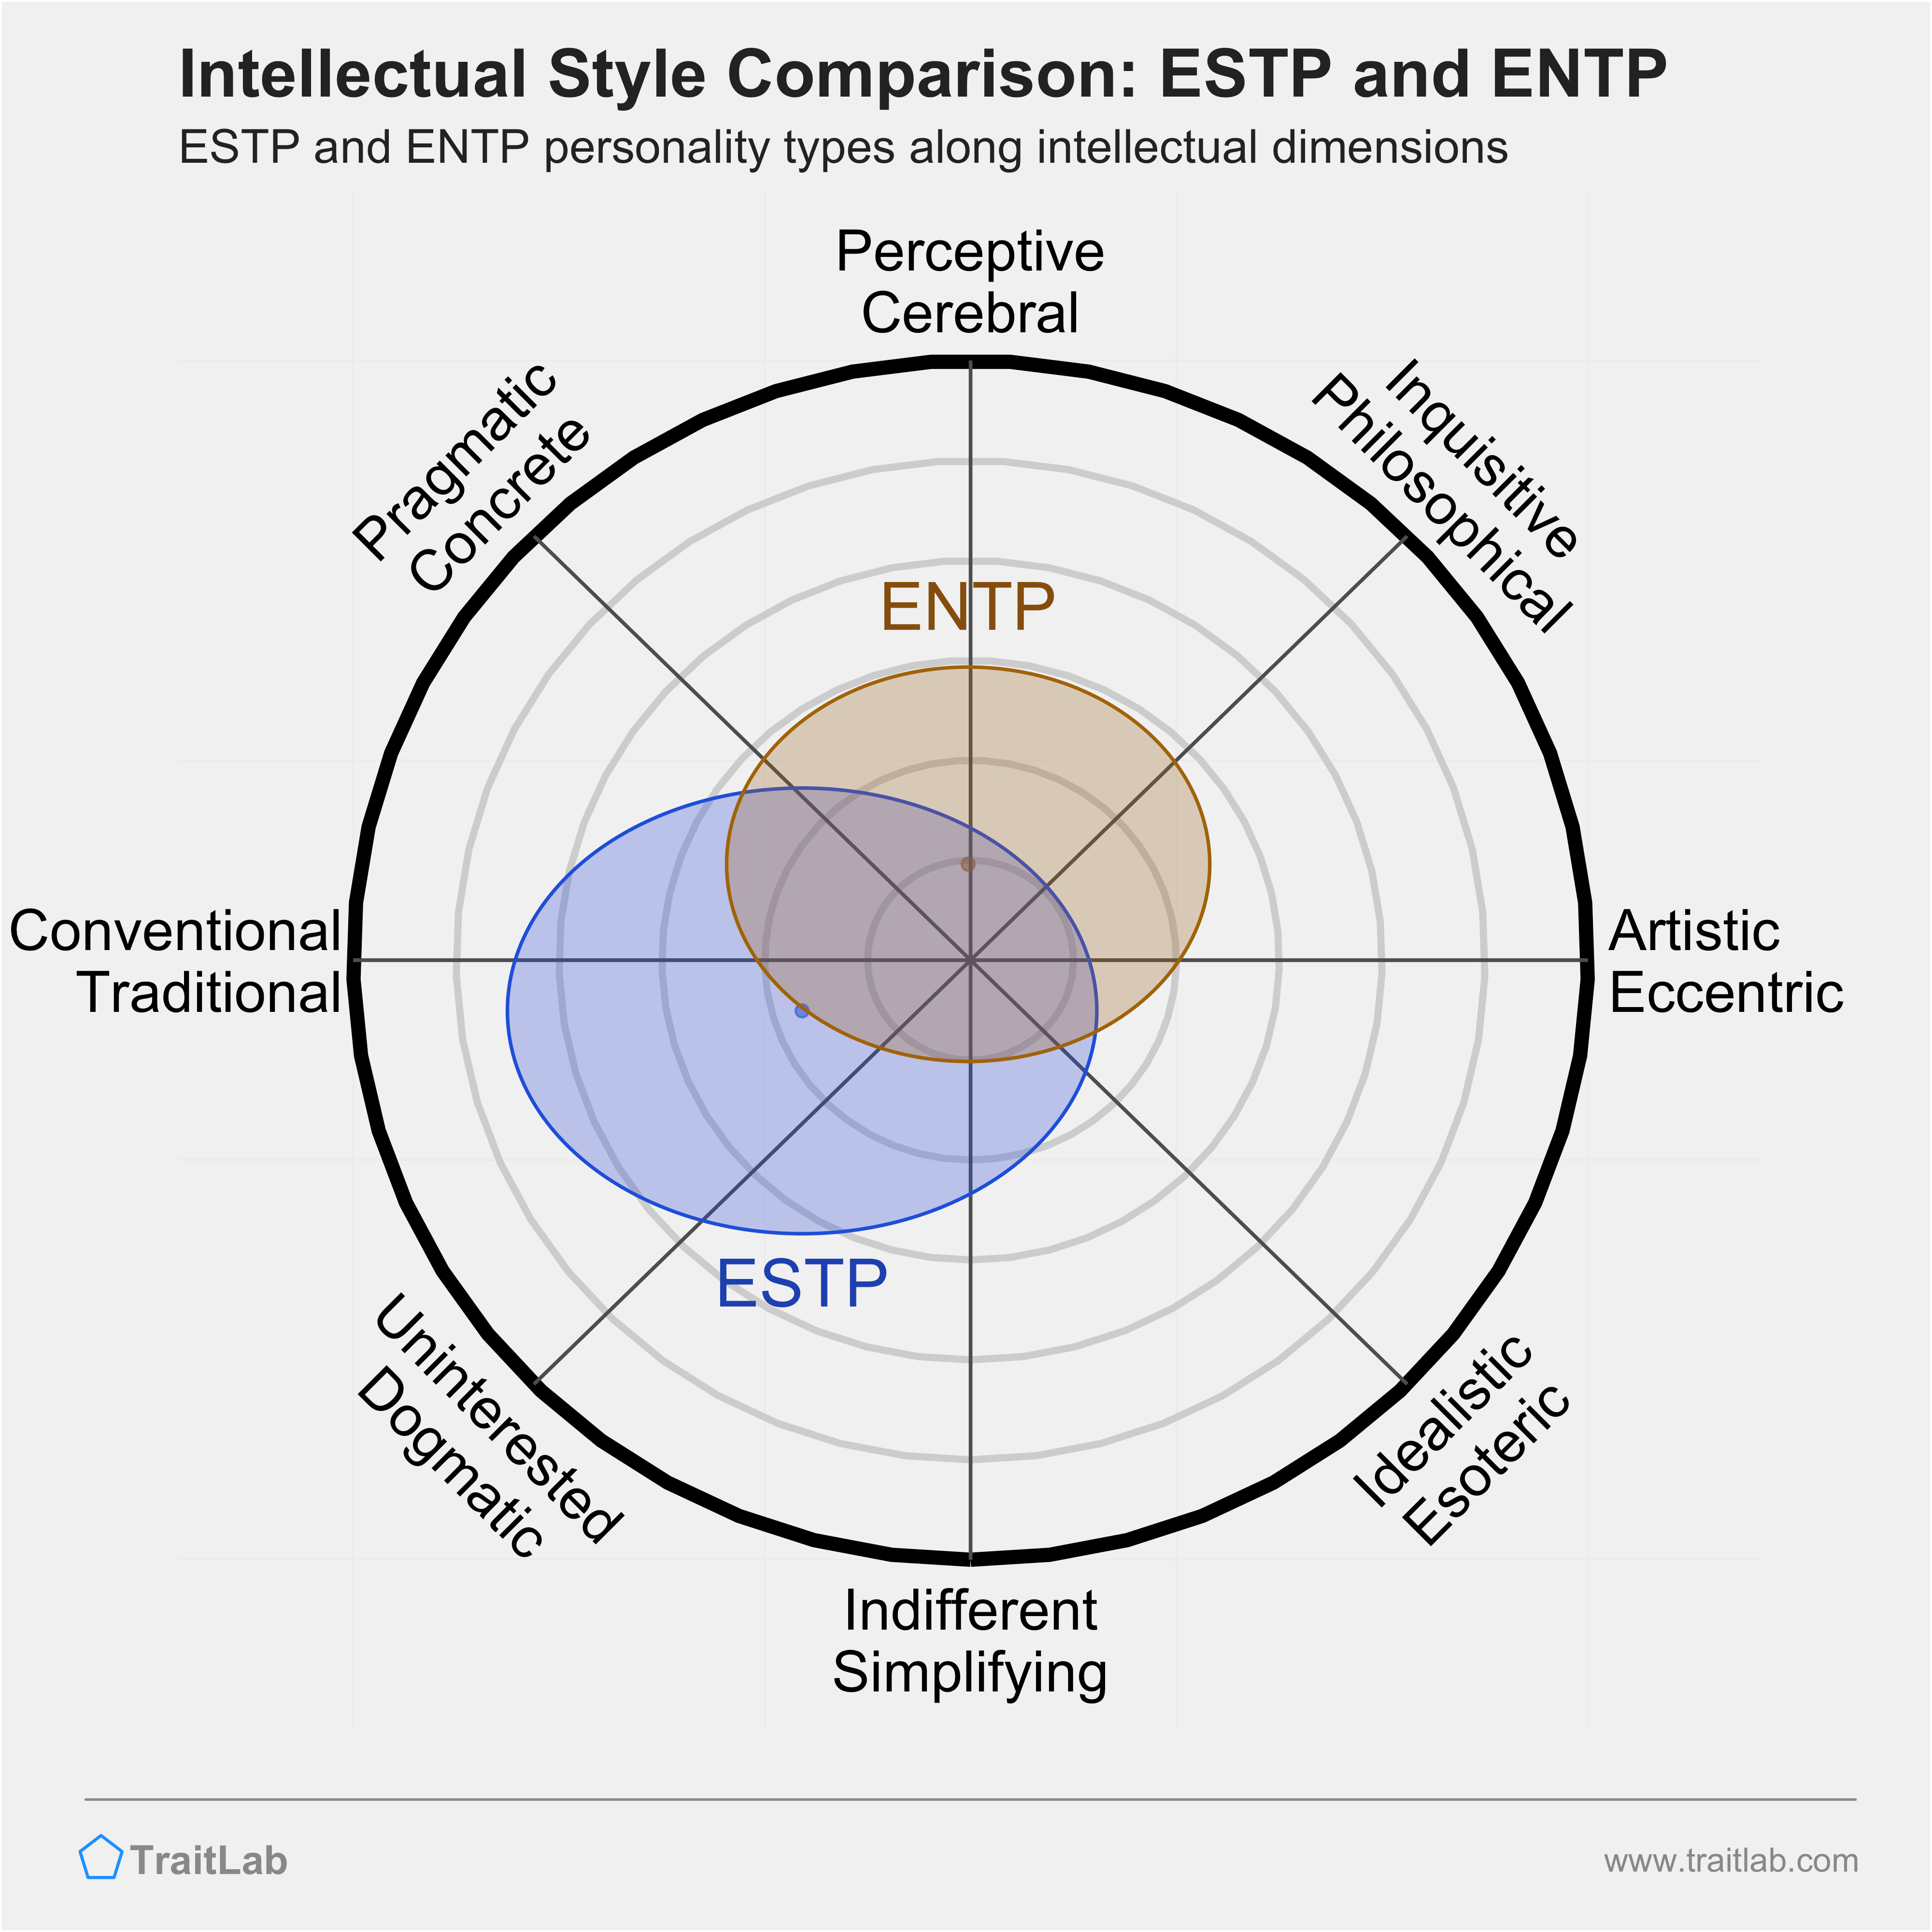 ESTP and ENTP comparison across intellectual dimensions